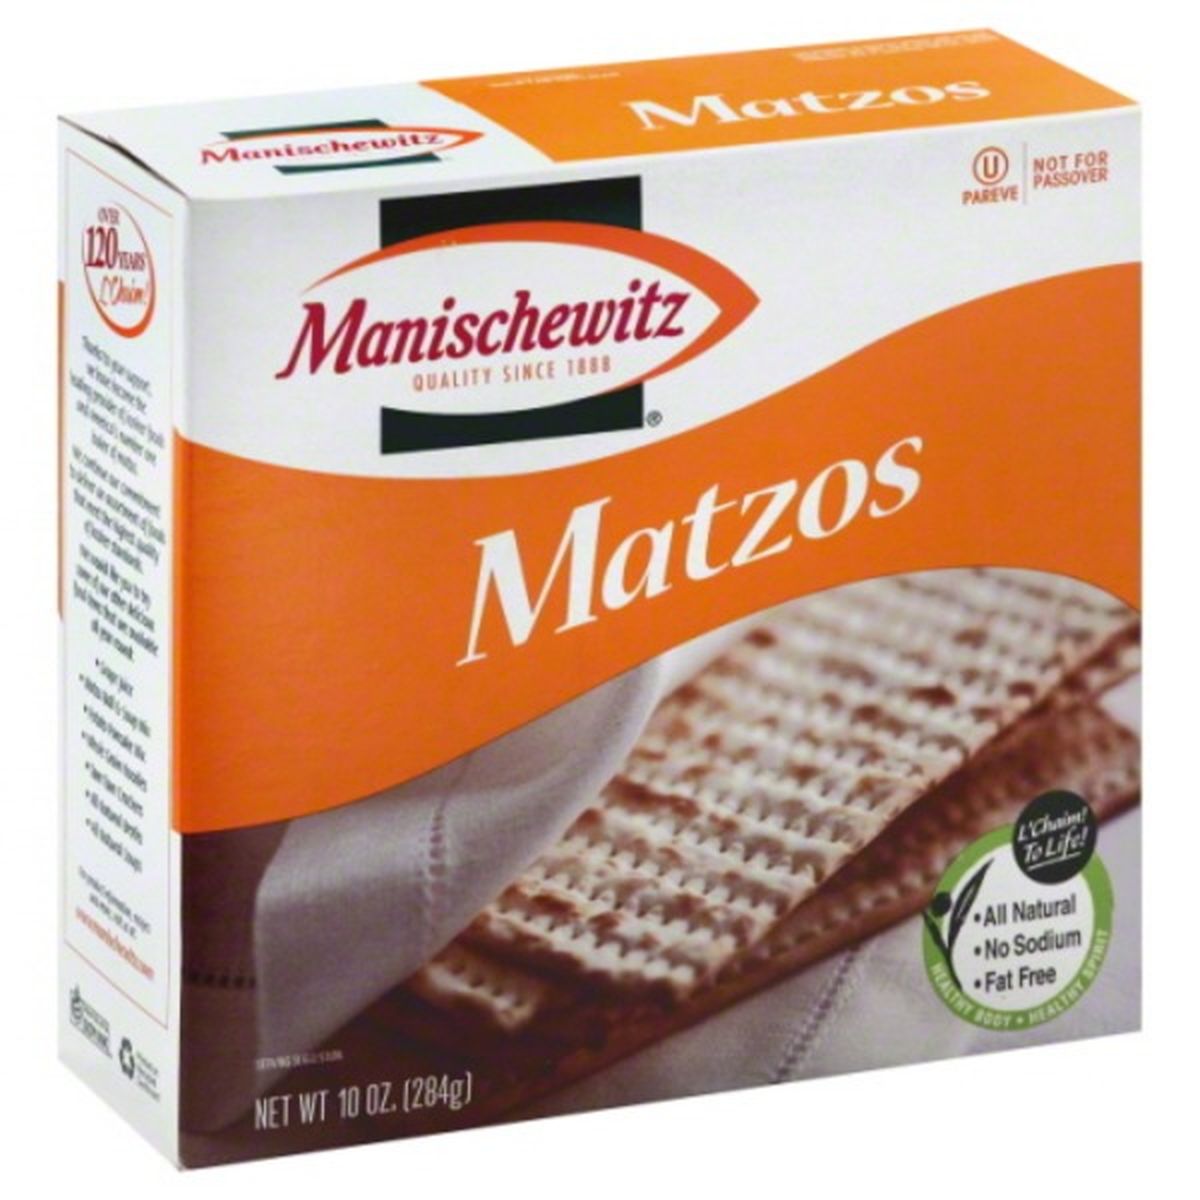 Calories in Manischewitz Matzos